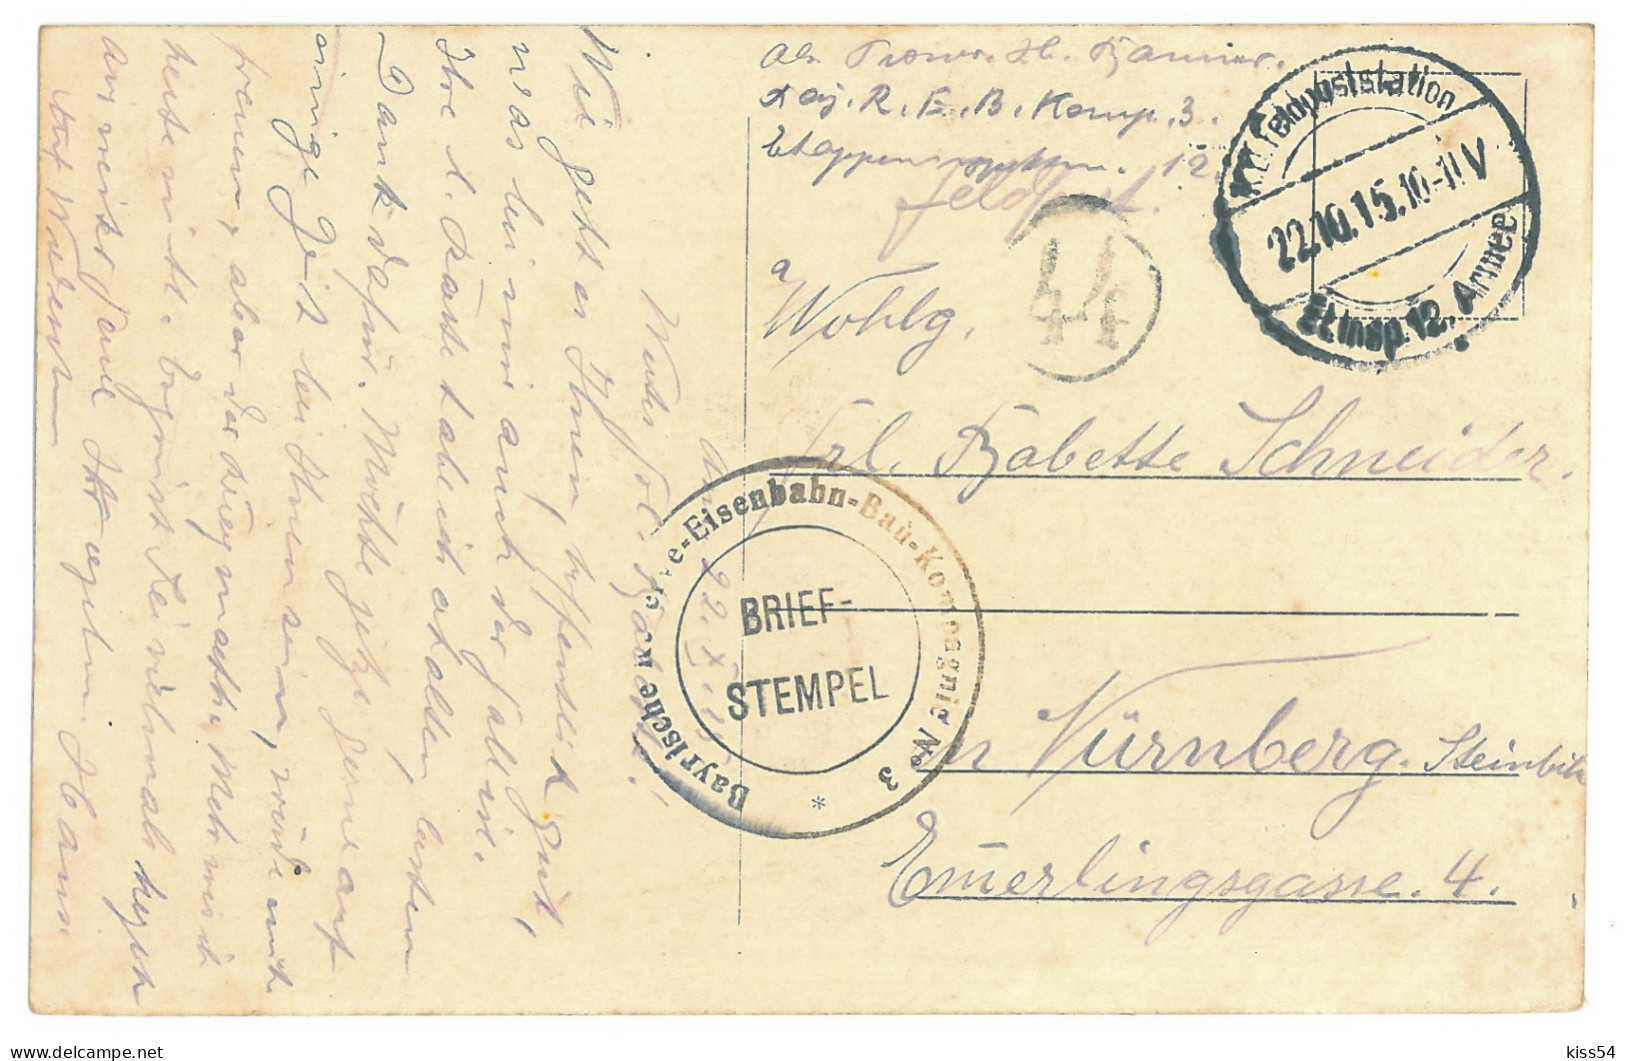 BL 29 - 16201 GRODNO, Belarus - Old Postcard, CENSOR - Used - 1915 - Belarus